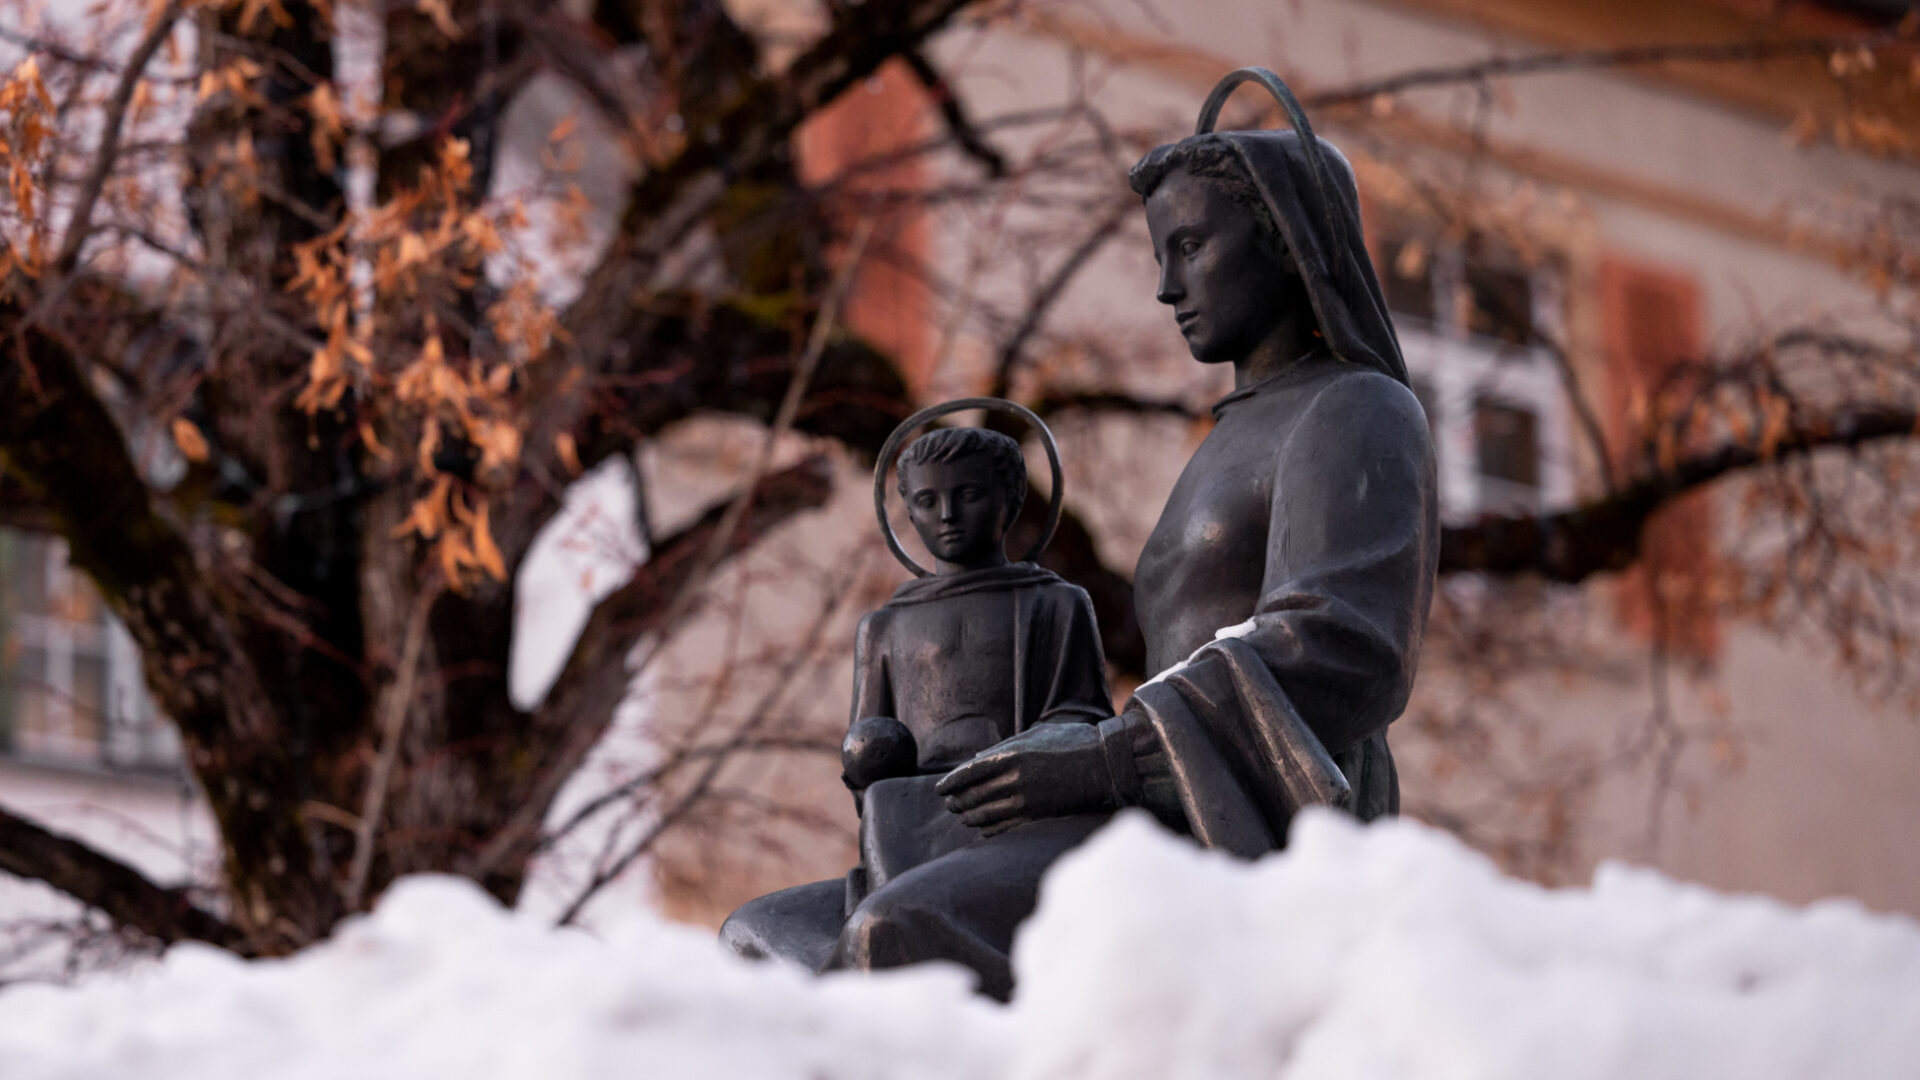 Jesus und Maria im Schnee.